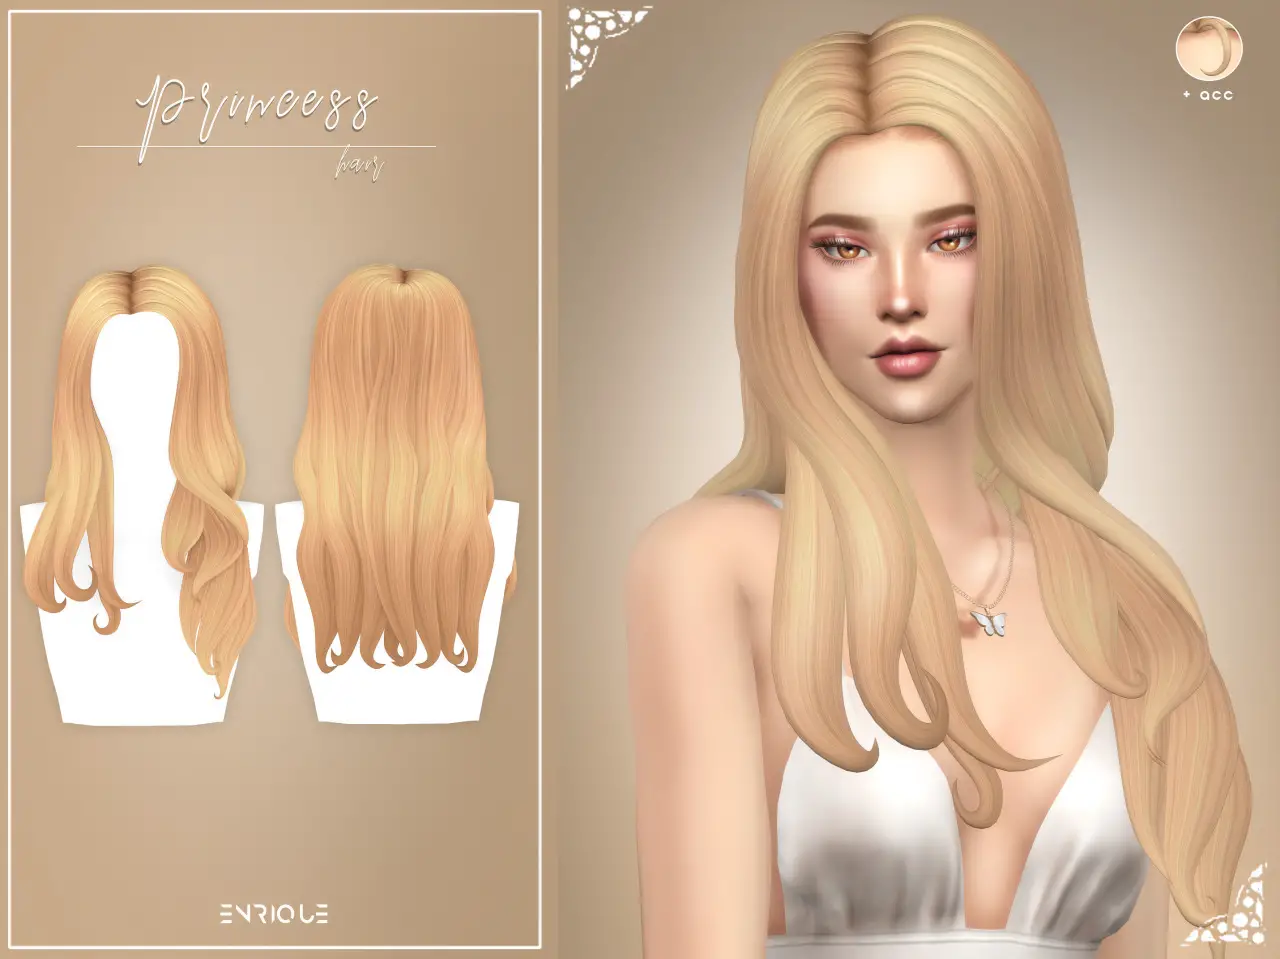 Enrique: Princess Hair - Sims 4 Hairs